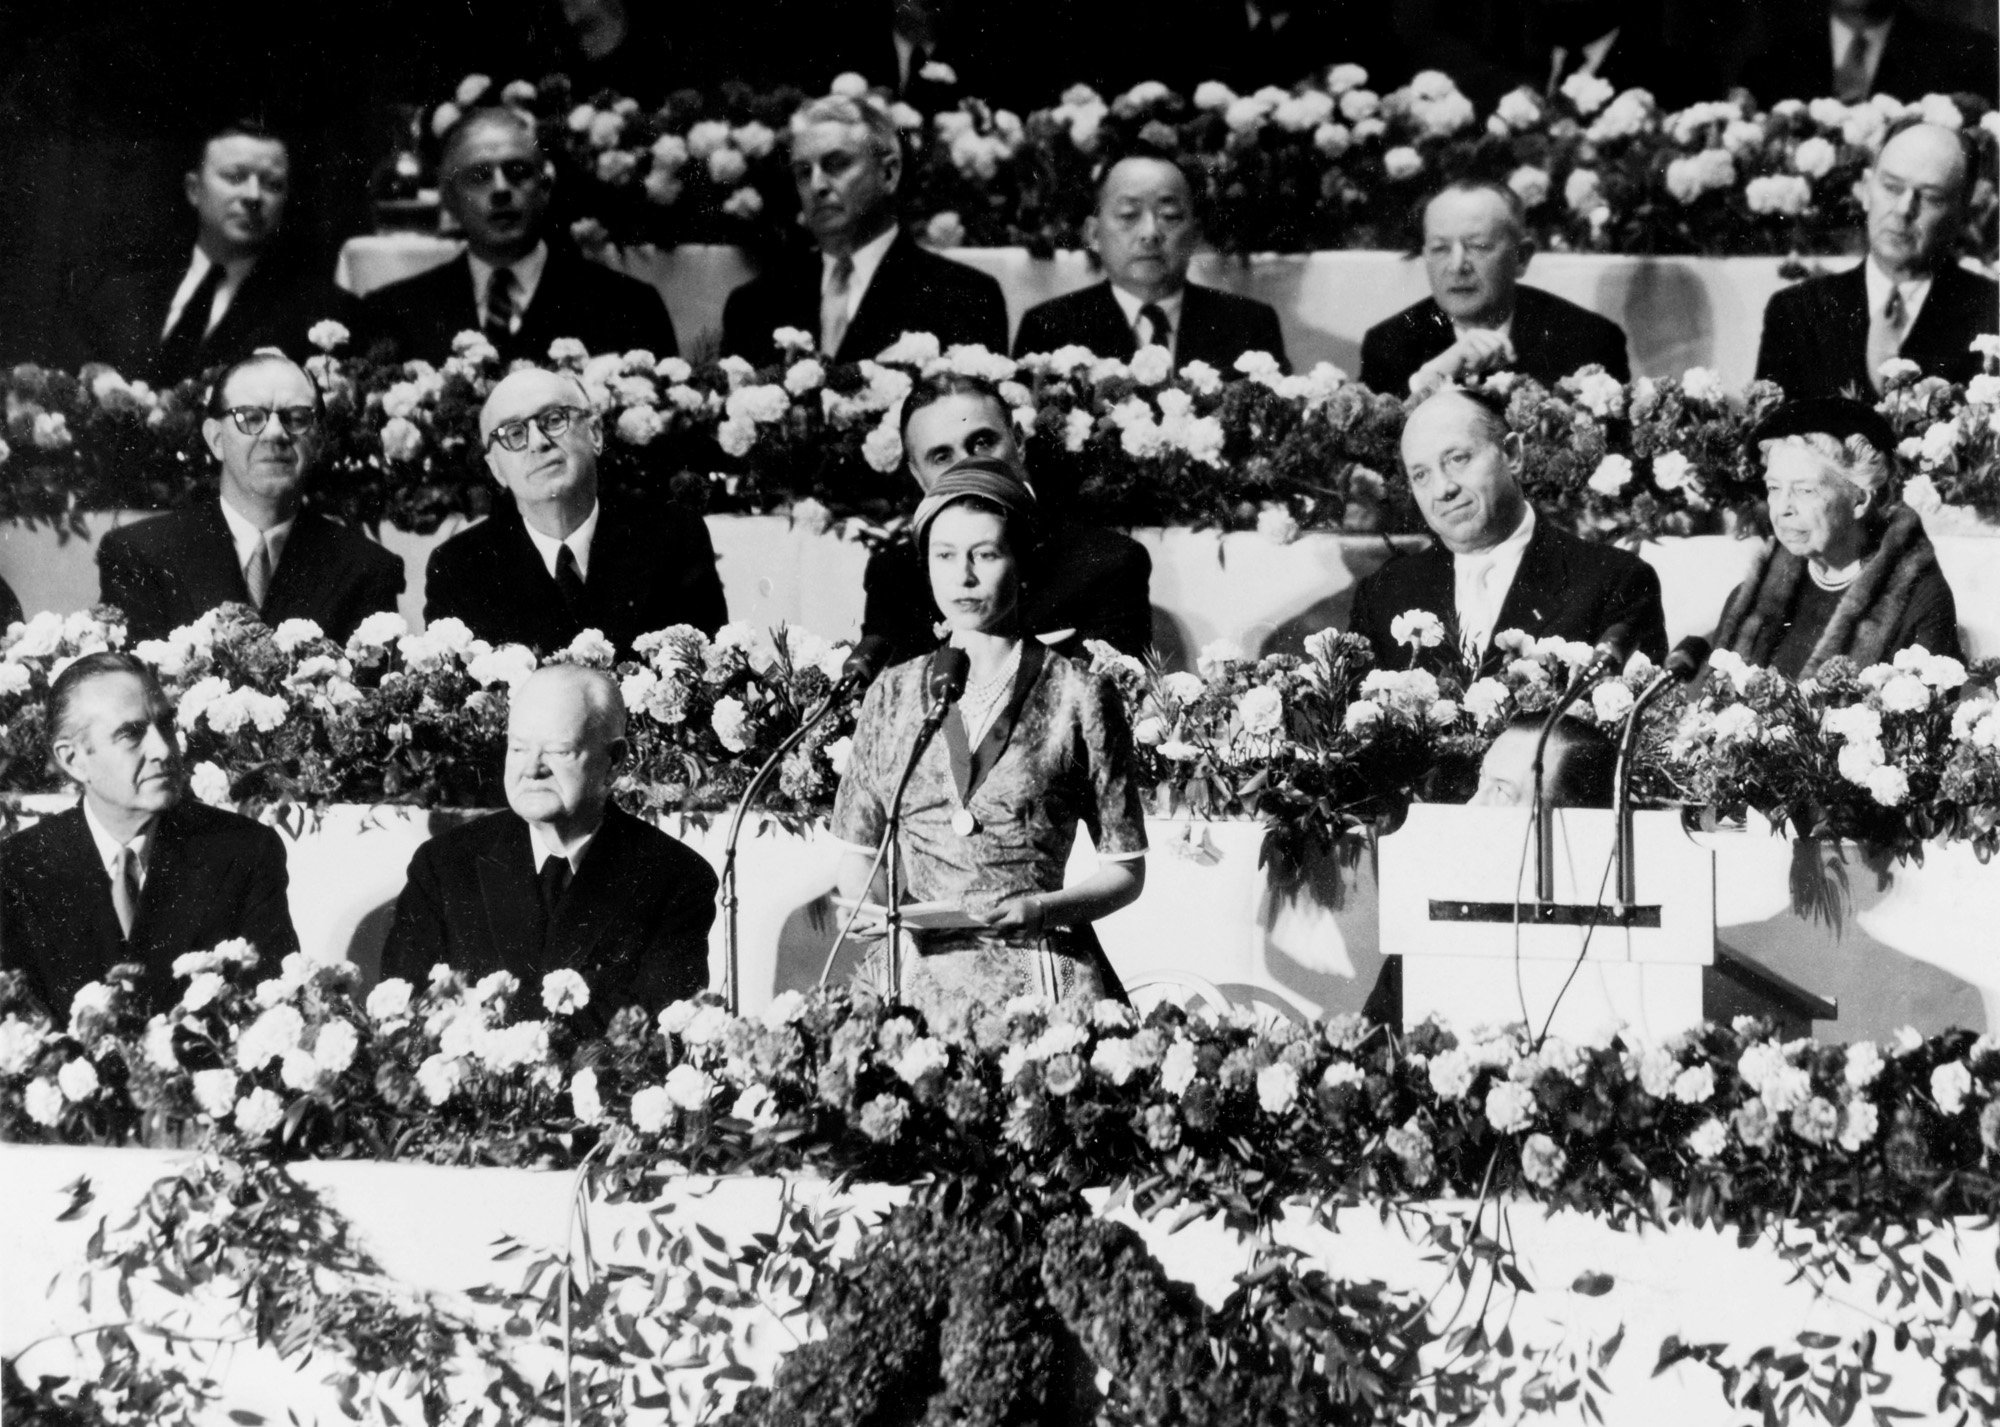 वाल्डोर्फ एस्टोरिया में भाषण देते हुए महारानी एलिजाबेथ द्वितीय - 1957